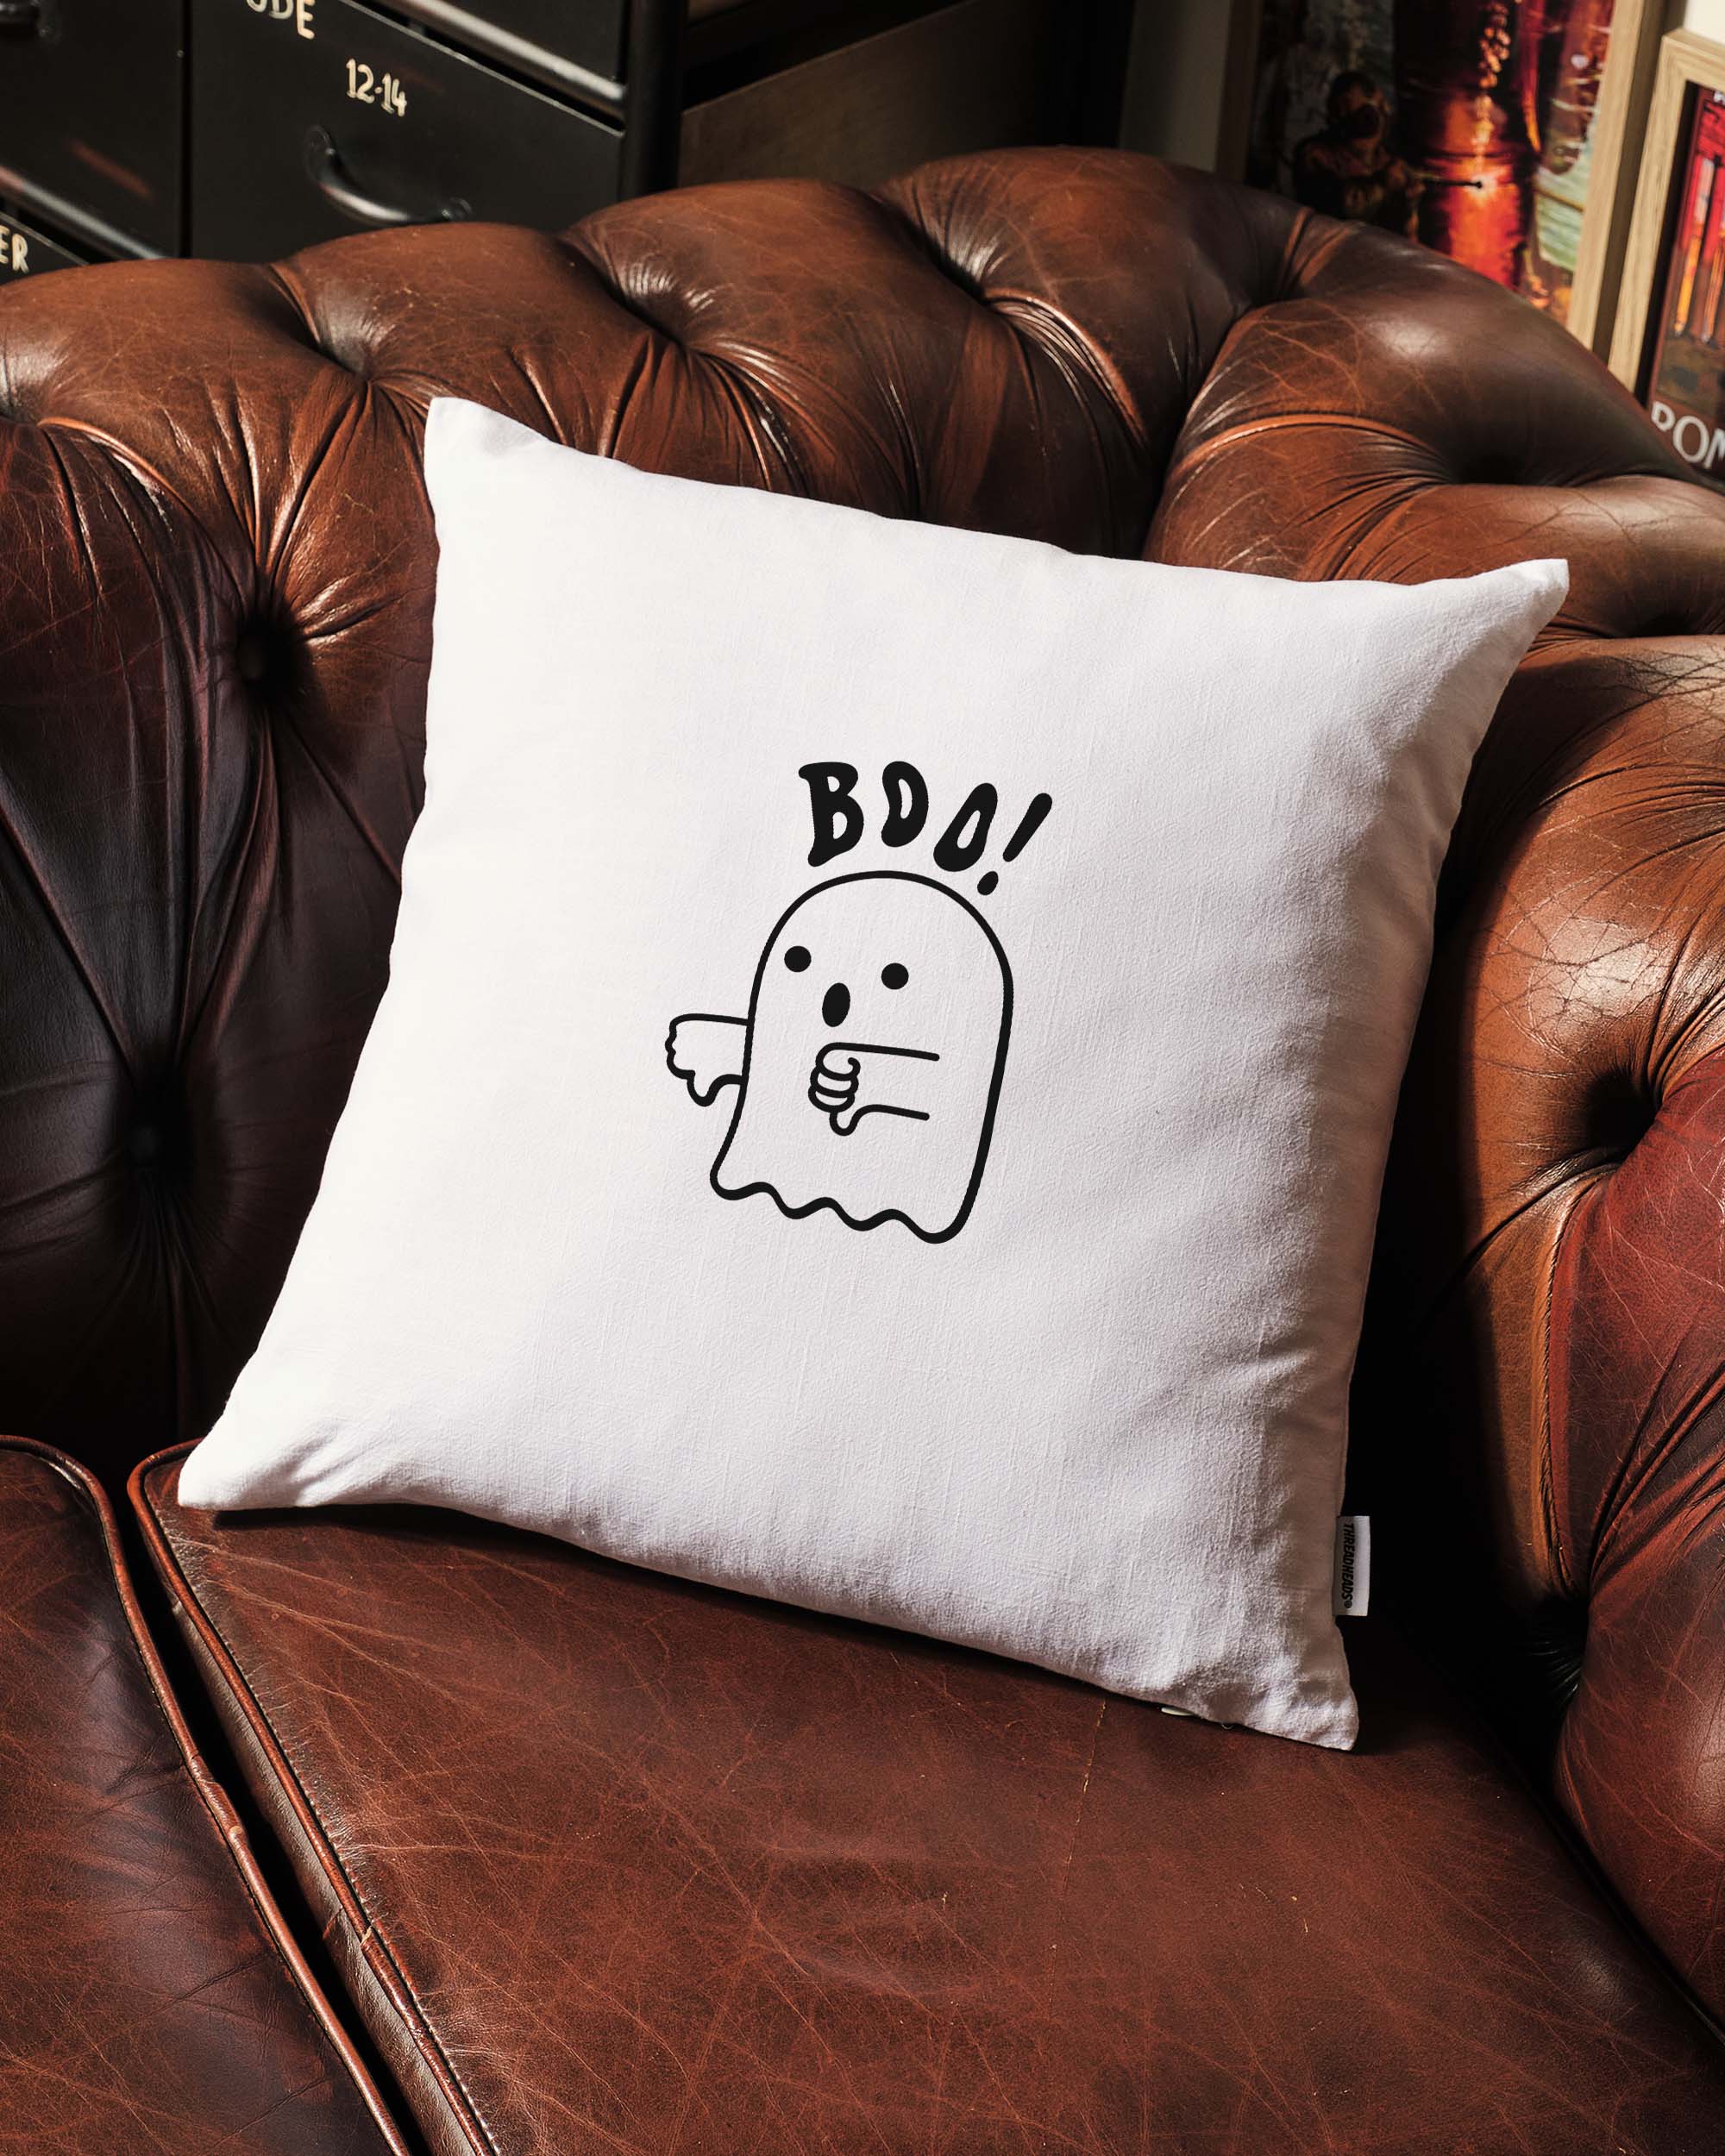 Boo Ghost Cushion